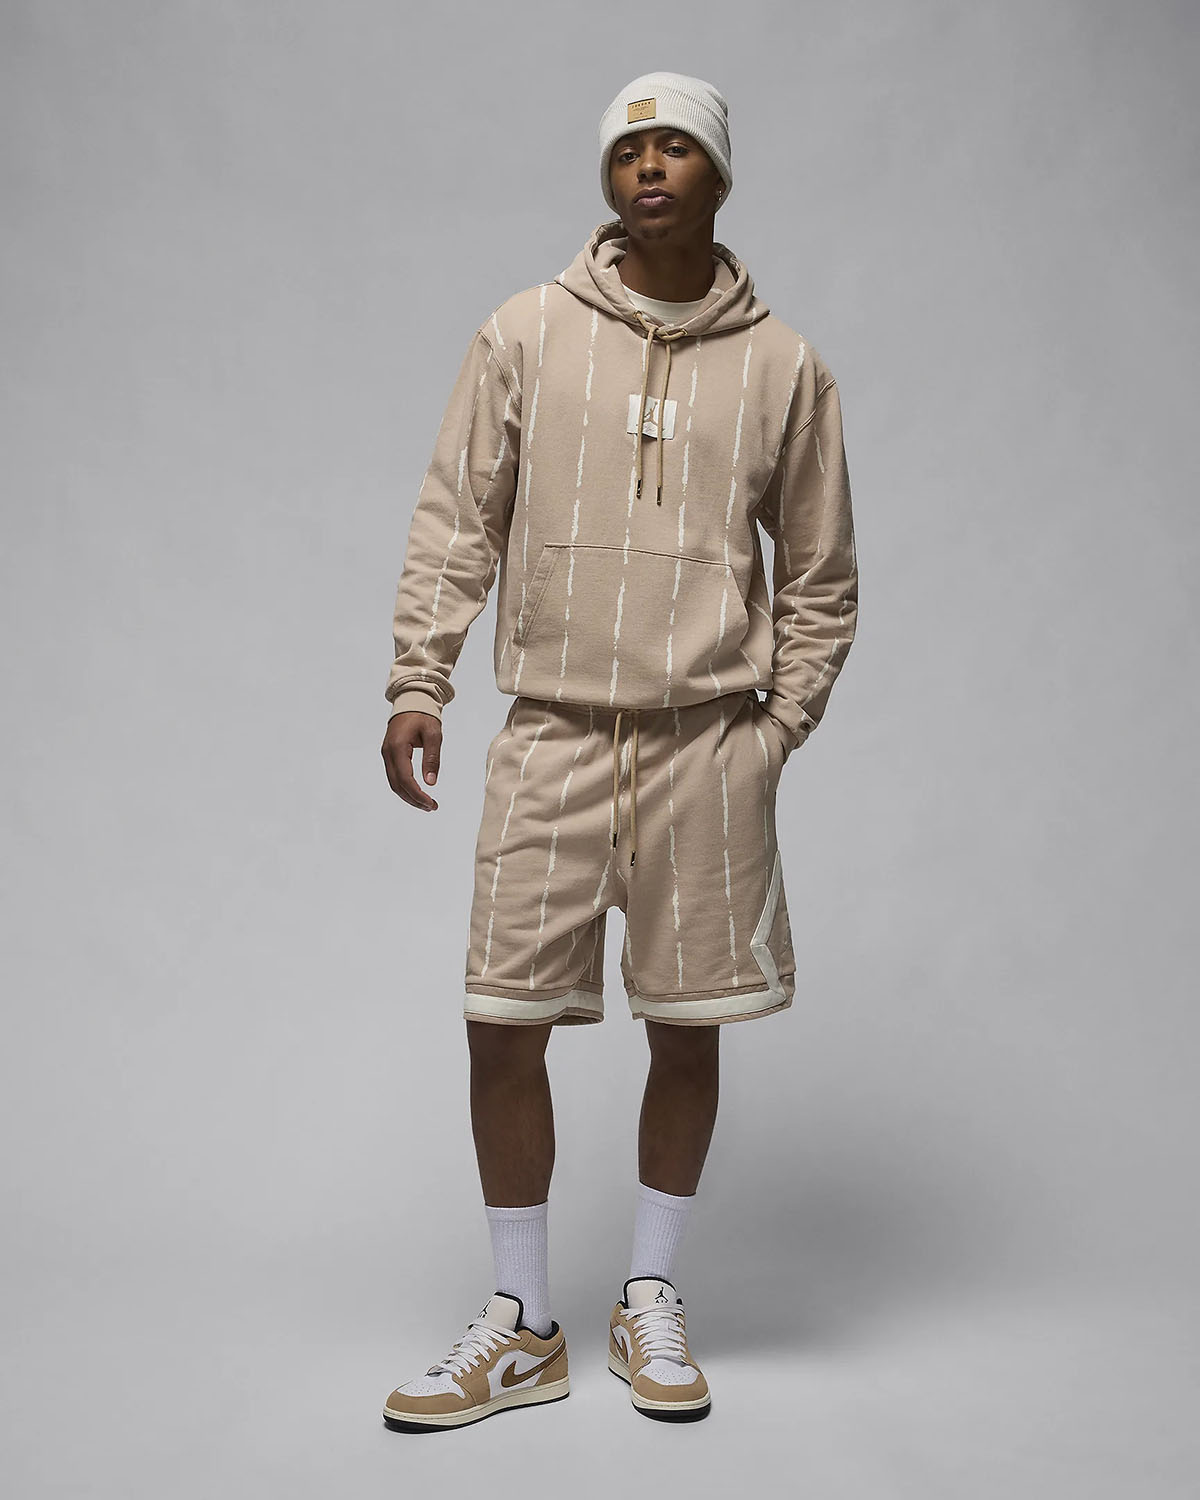 jordan Toe Flight Essentials Heroes Hoodie Shorts Legend Medium Brown Outfit